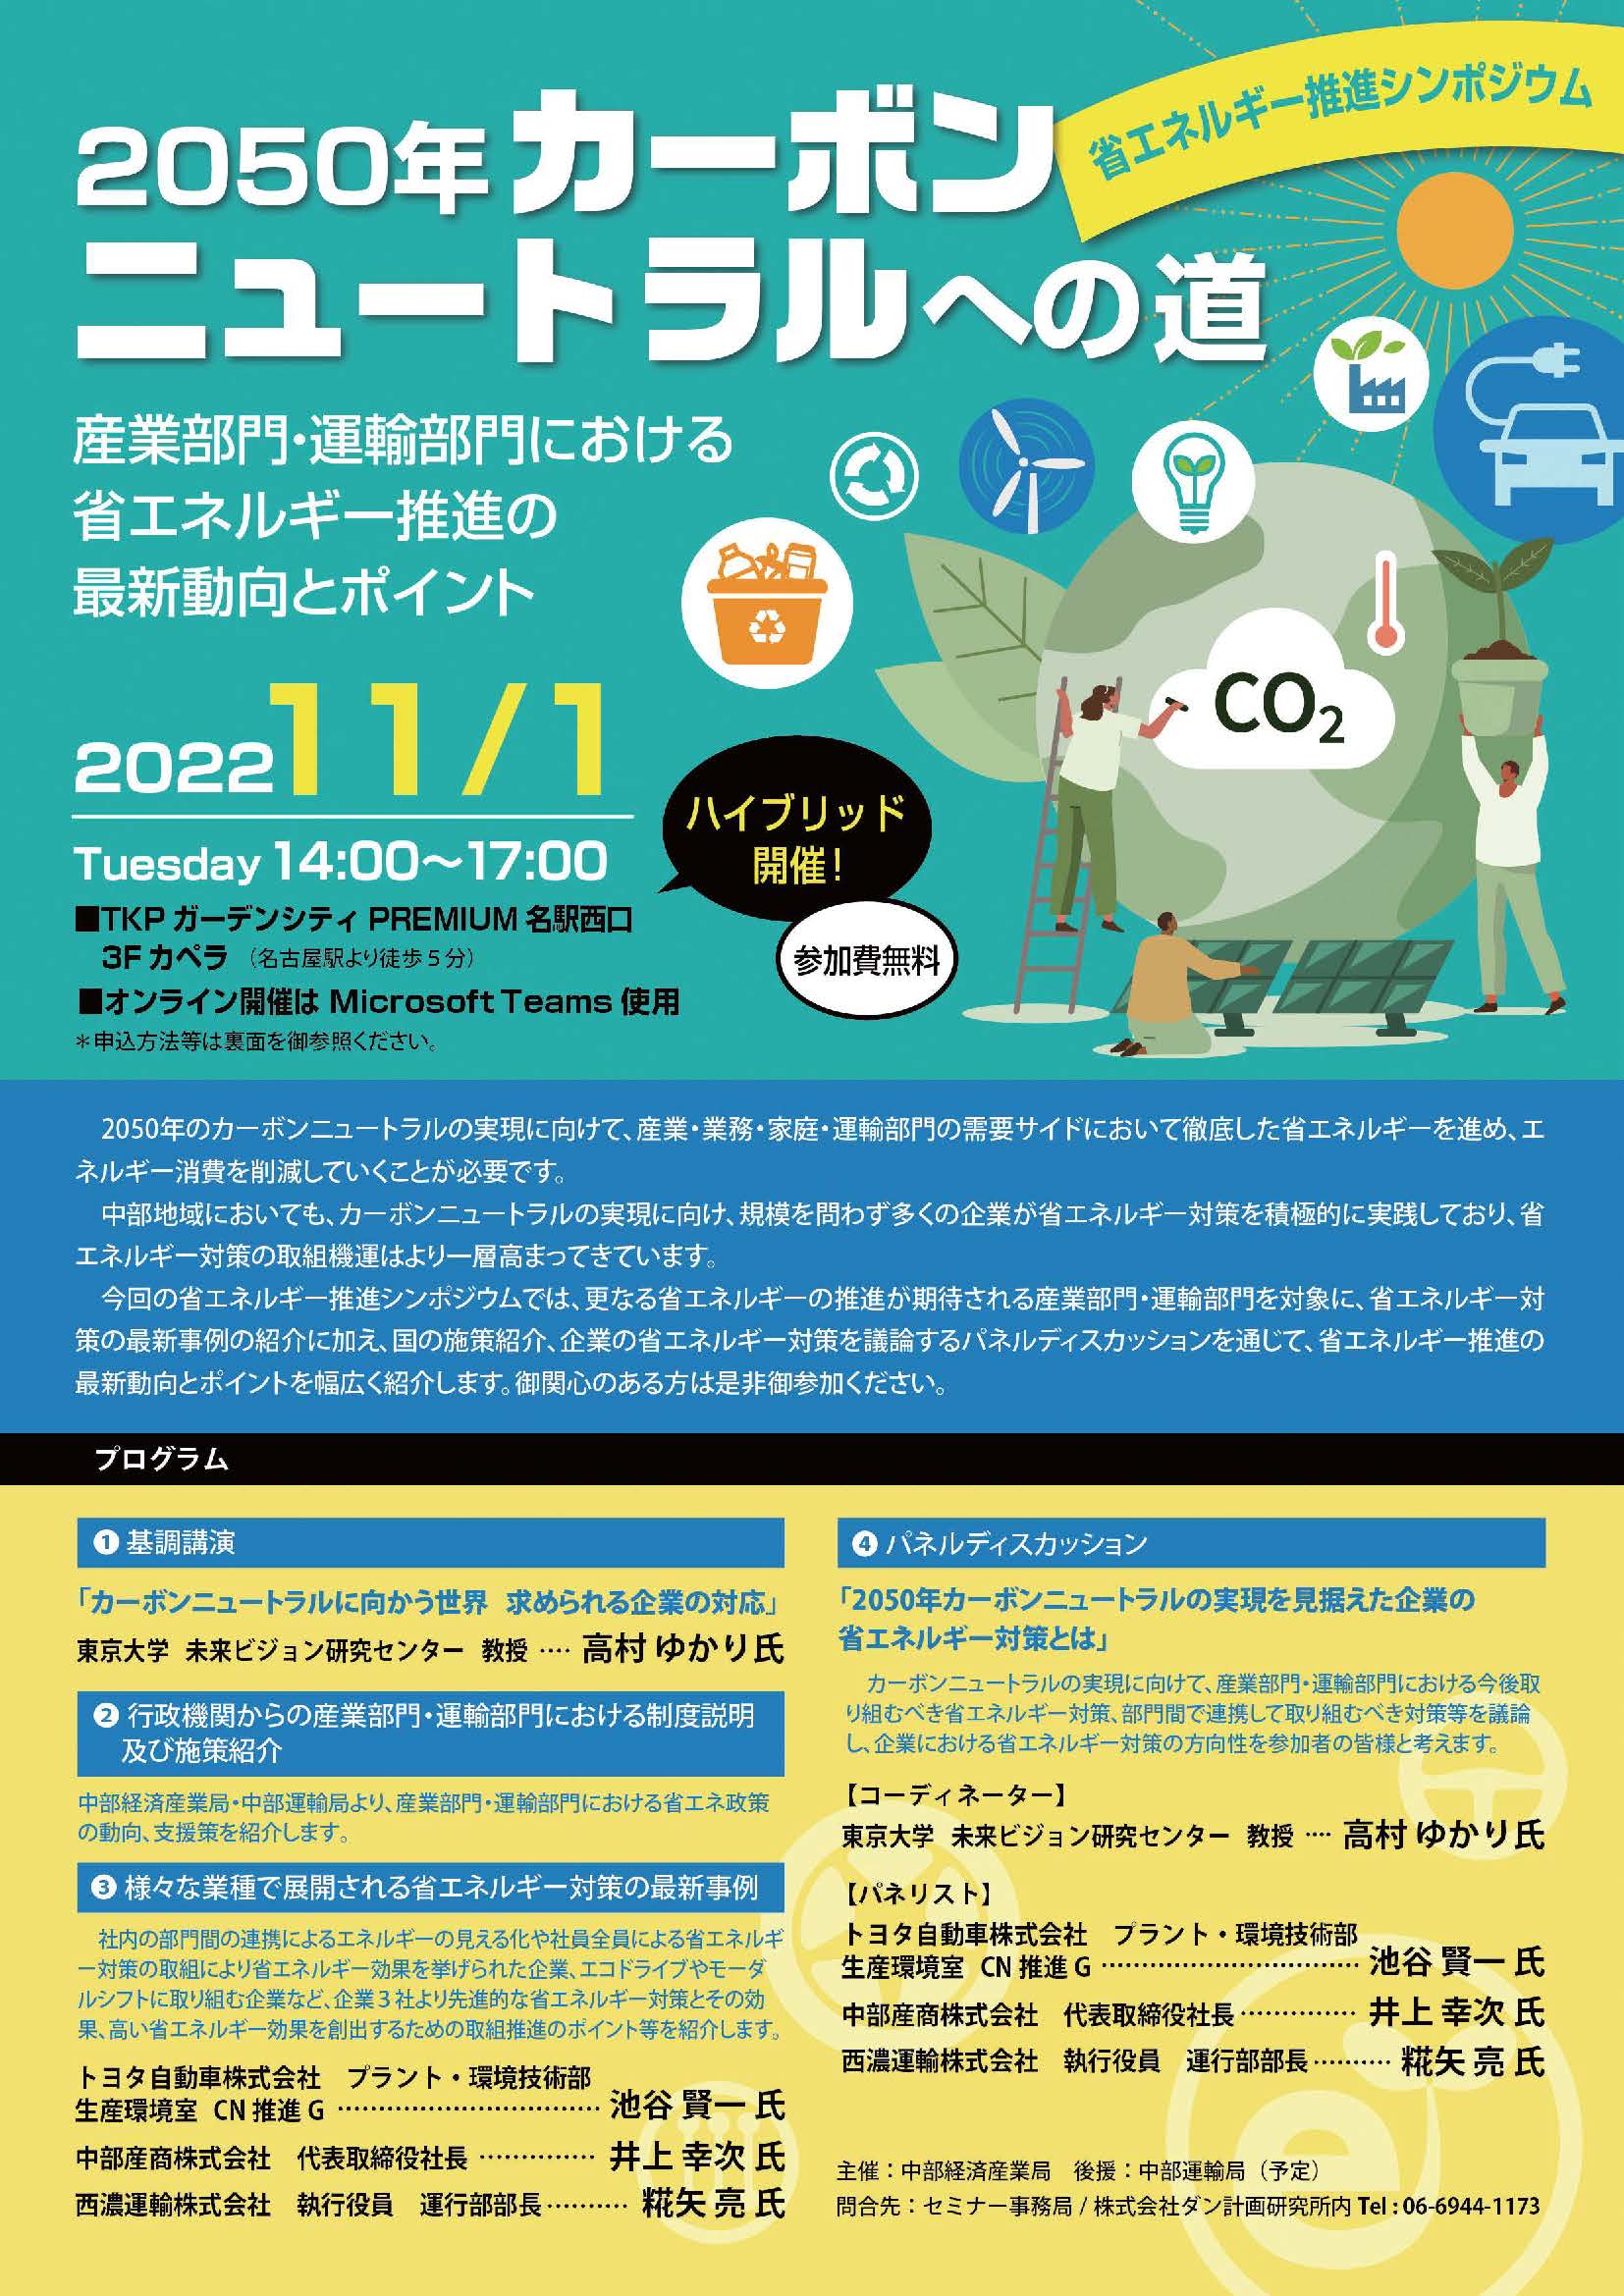 11月1日(火)中部経済産業局主催　『省エネルギー推進シンポジウム』が開催されます